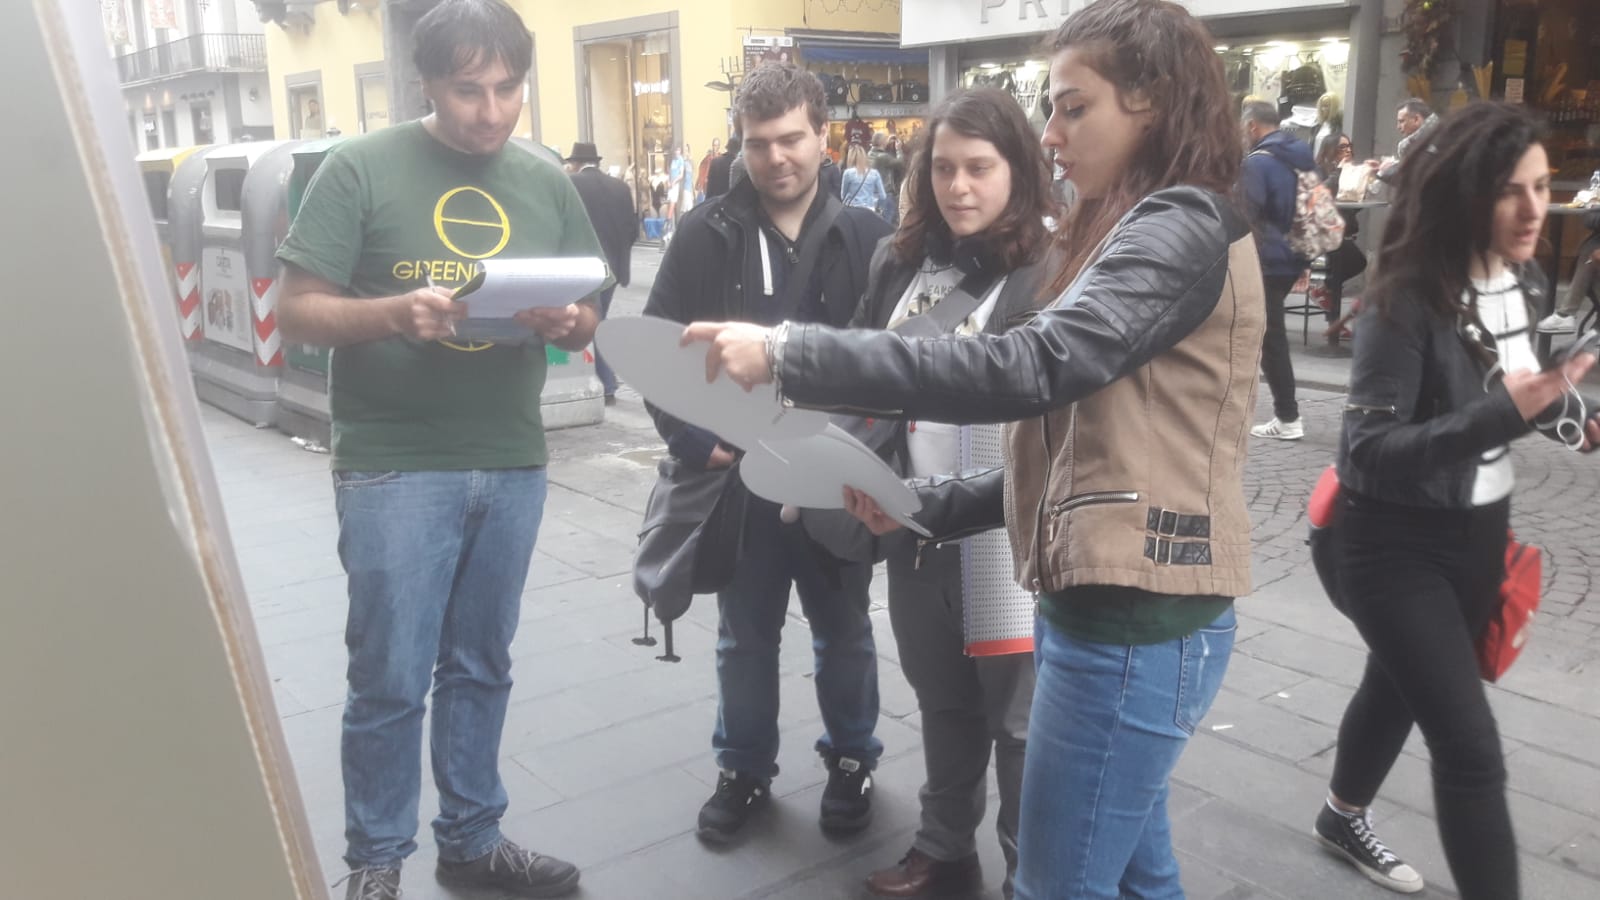 Napoli, Greenpeace in piazza per sollecitare il Governo a cambiare il Piano Nazionale integrato energia e clima